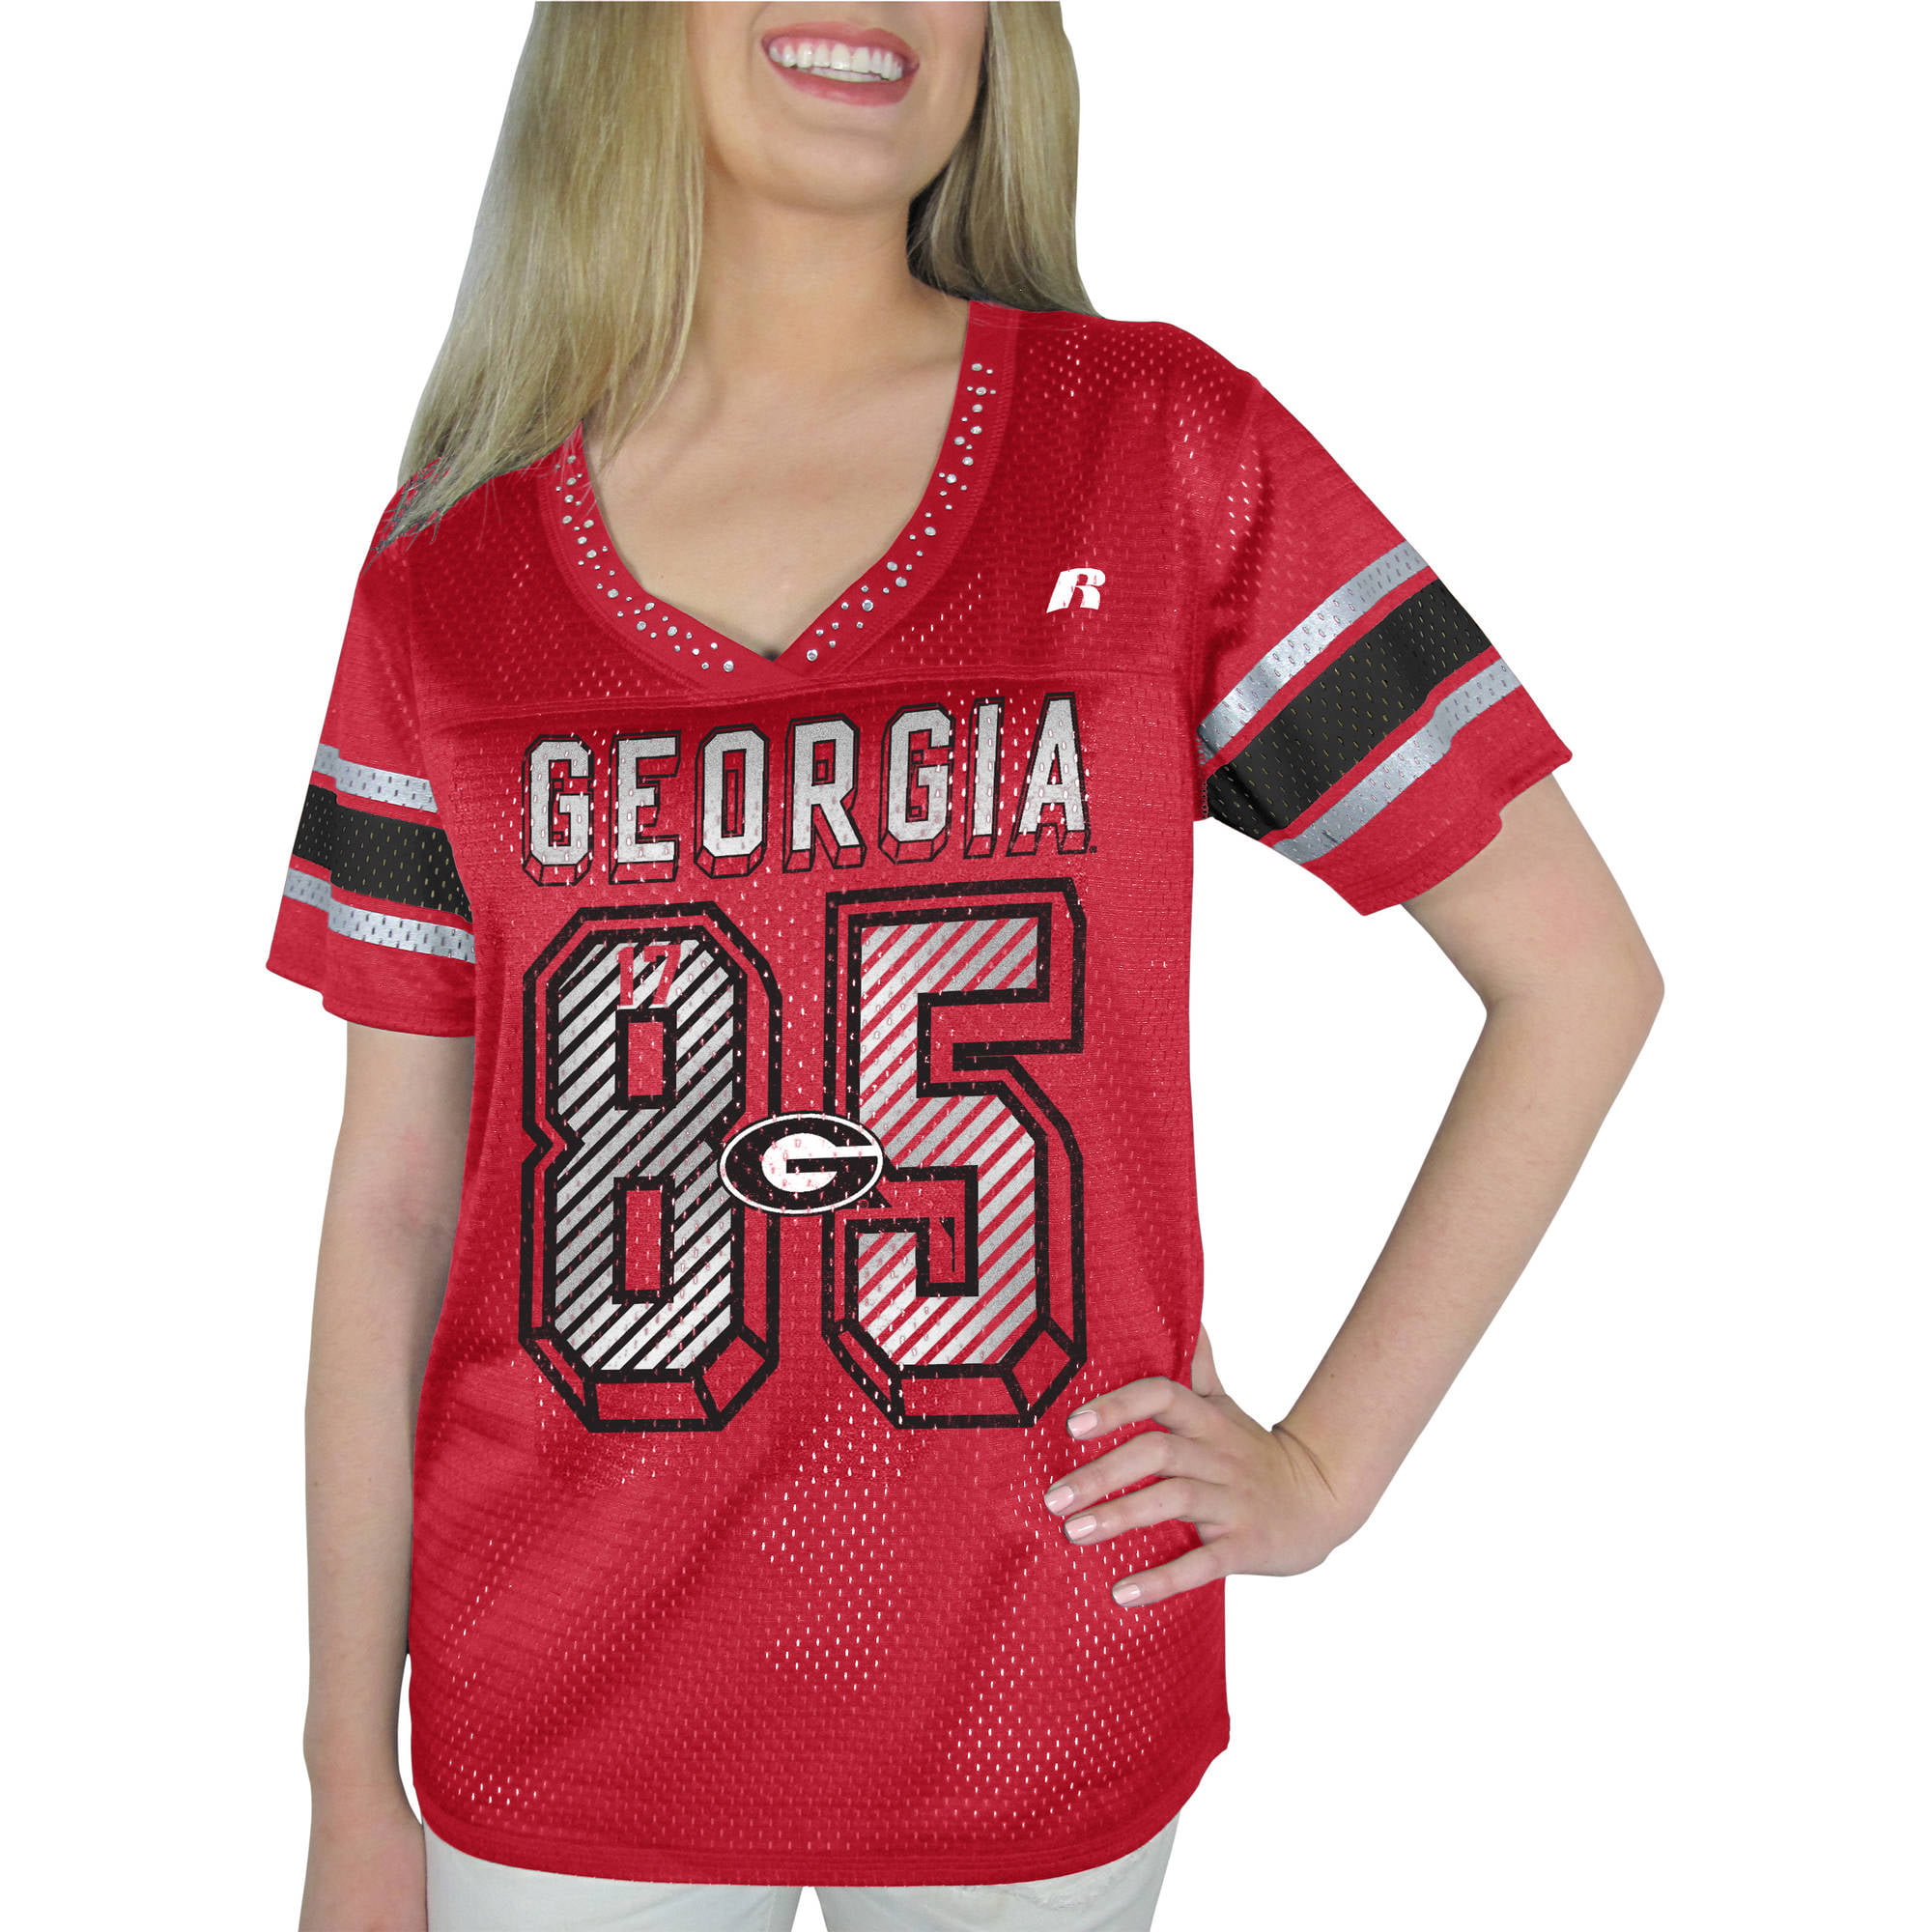 georgia bulldogs women's jersey